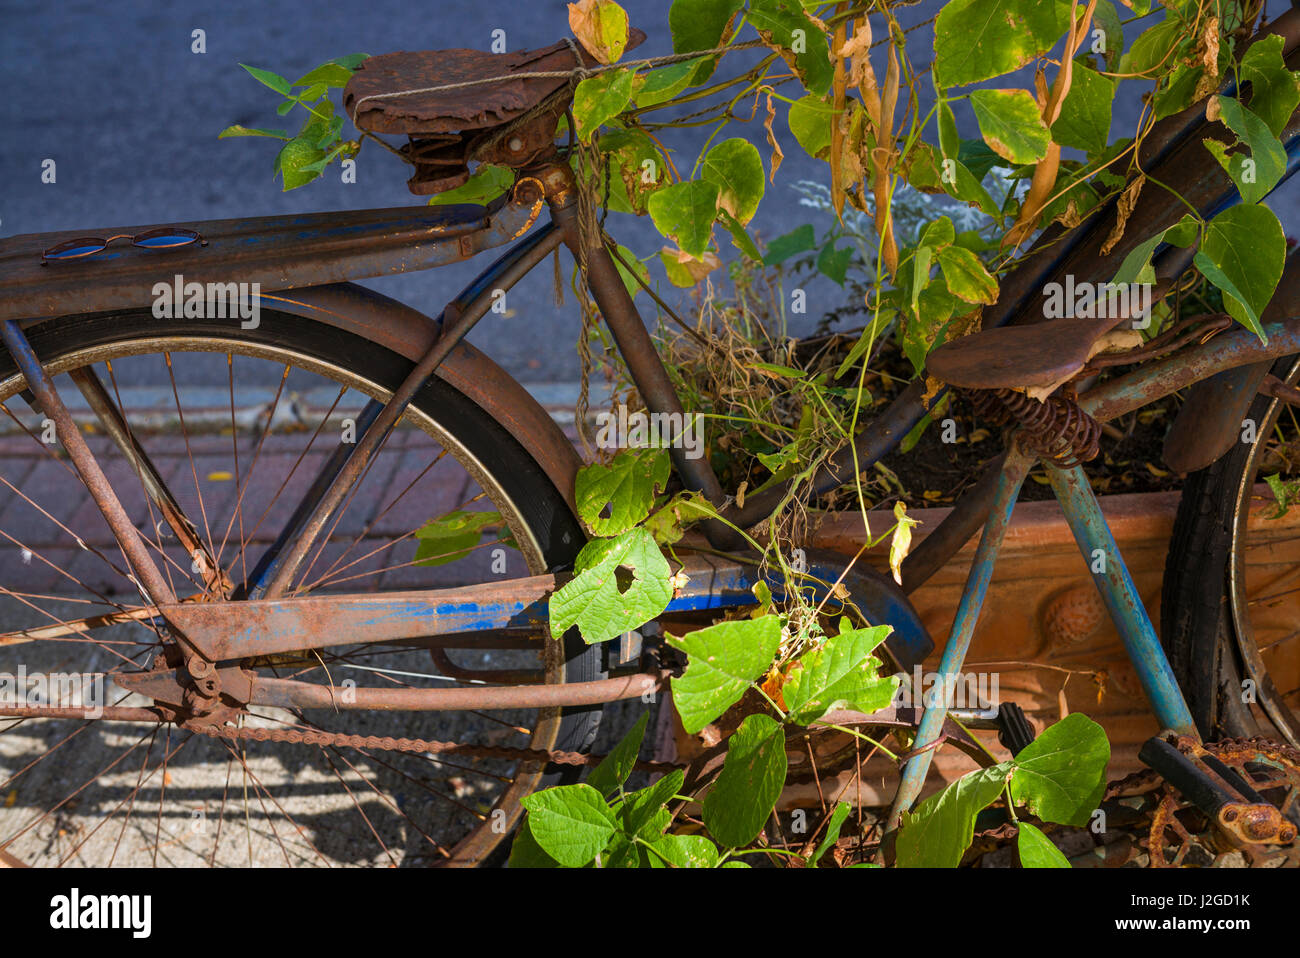 USA, Maine, Belfast, rostigen Fahrrad Stockfoto